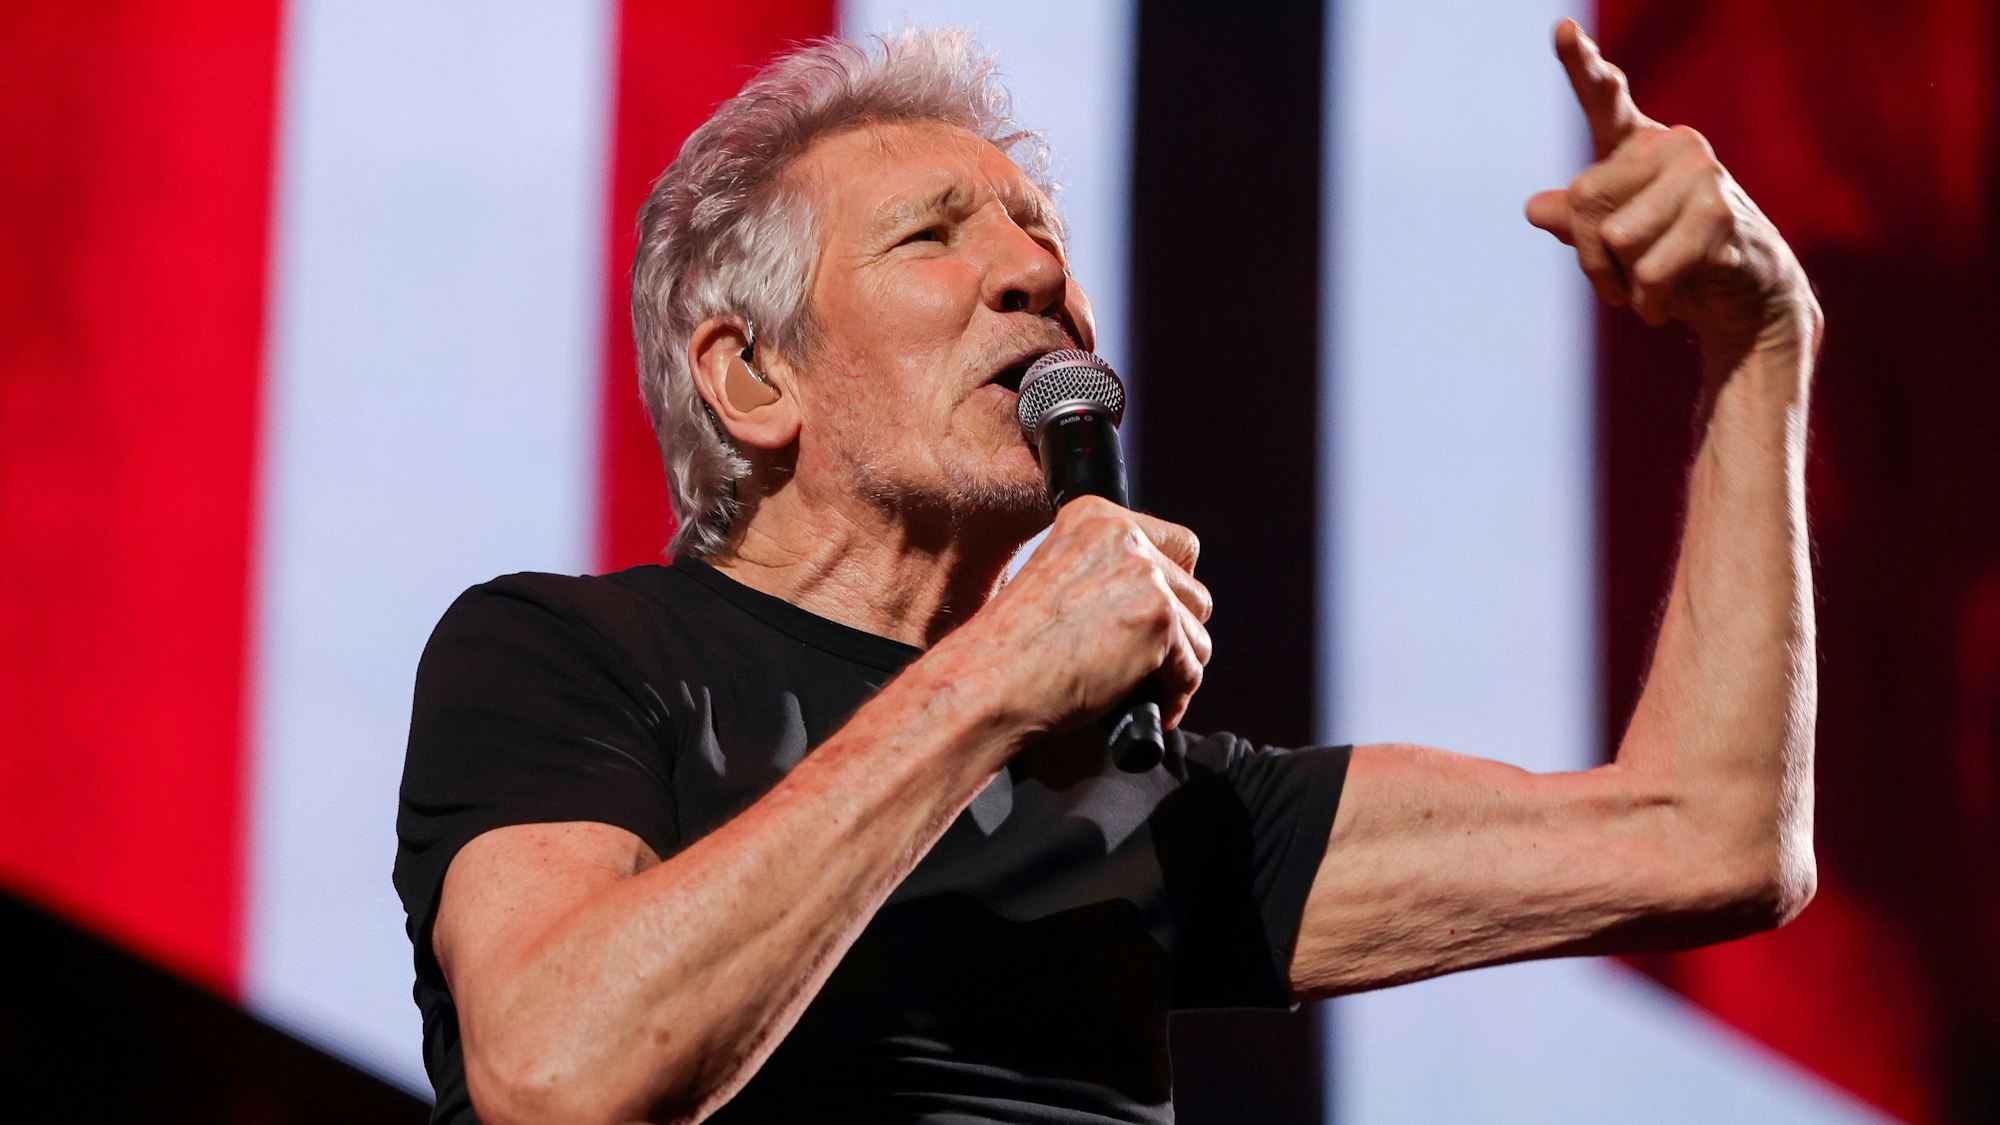 Roger Waters, in ein schwarzes T-Shirt gekleidet, singt in ein Mikrofon. Sein linker Arm ist erhoben, der Zeigefinger der linken Hand ausgestreckt. Die Bühne im Bildhintergrund schimmert rot und weiß.